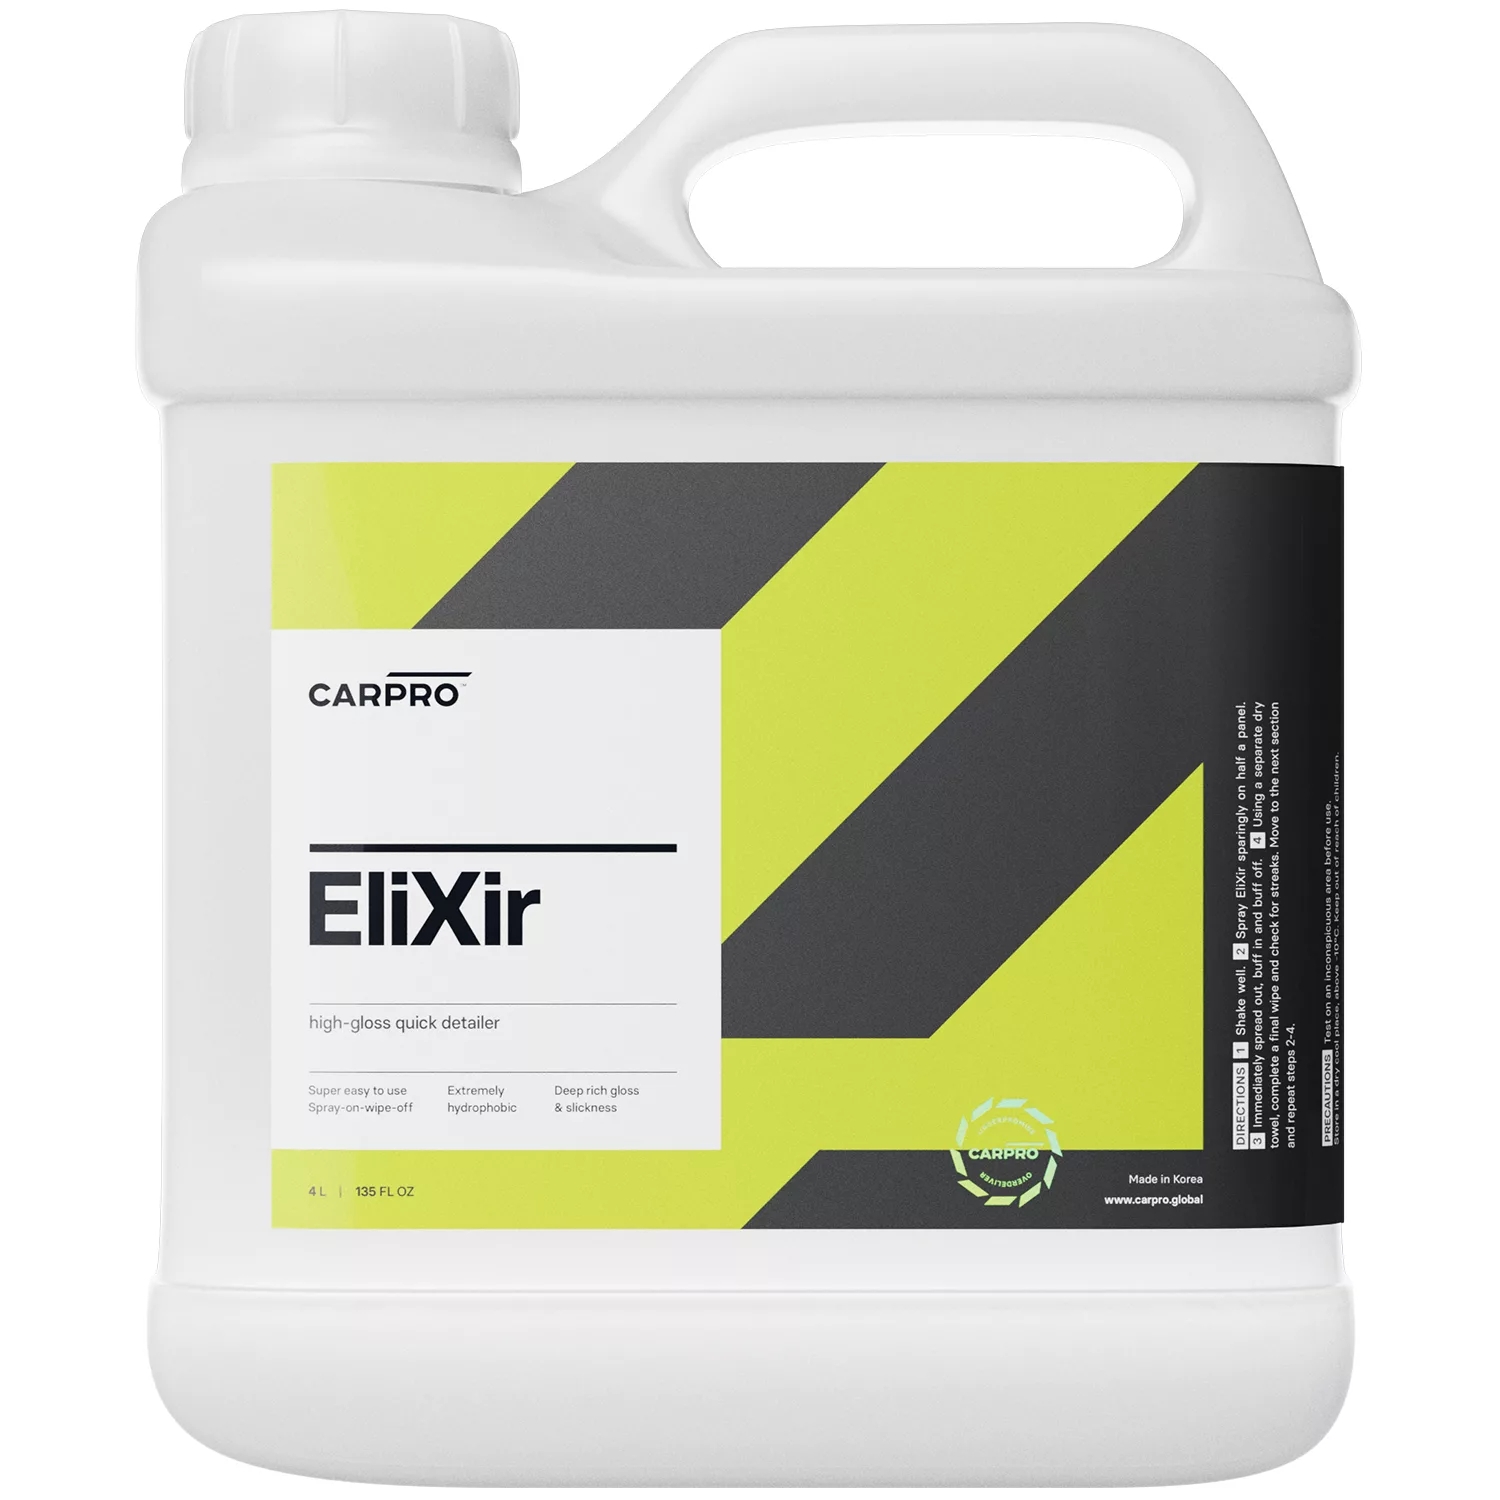 Image of CarPro Elixir – szybki i łatwy w aplikacji quick detailer, wysoka głębia i połysk 4L